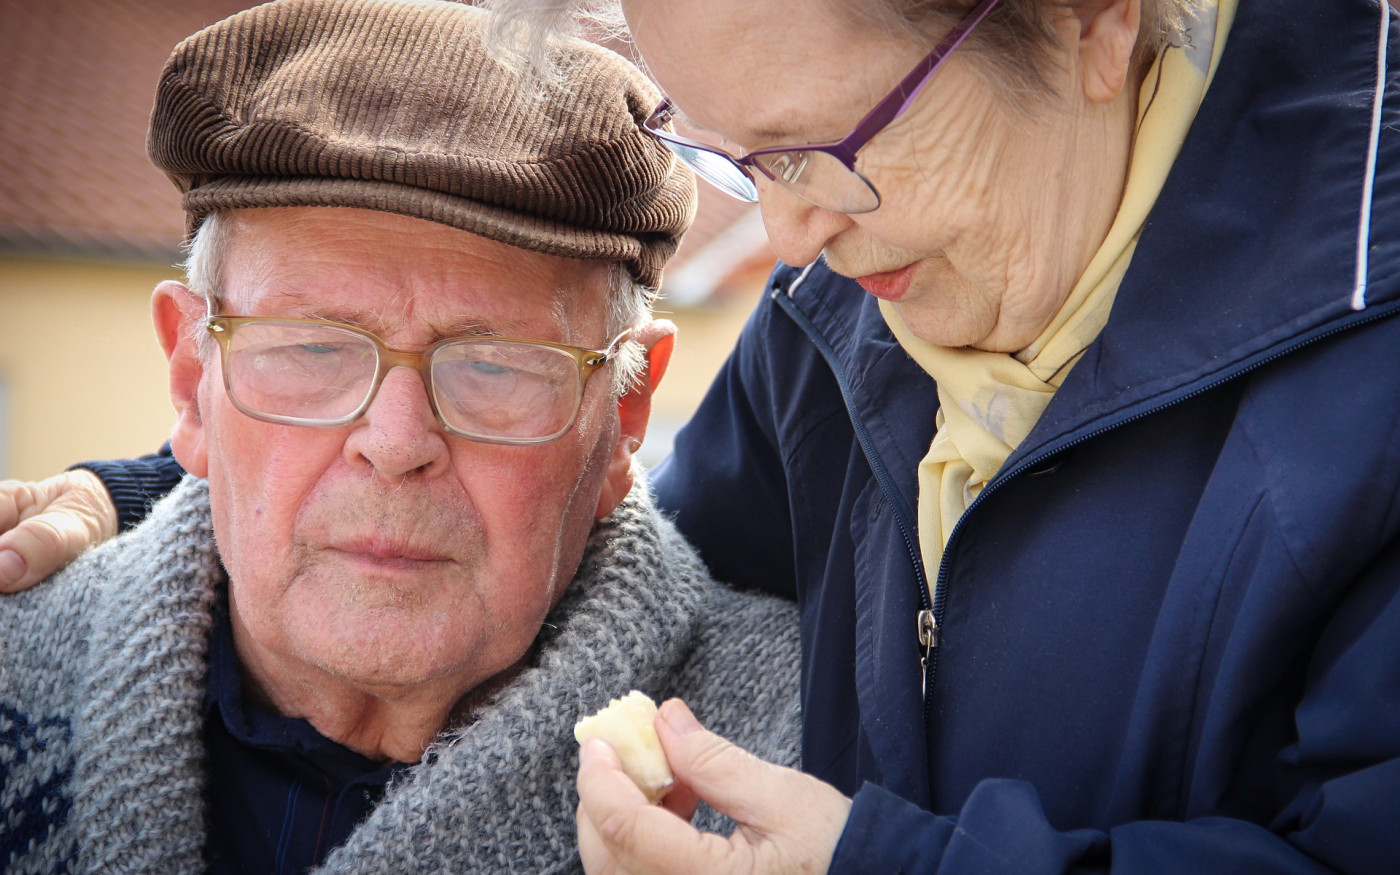 Mehr Geld für pflegende Rentner: Gifhorns Sozialverband gibt Tipps zum Flexi-Rentengesetz